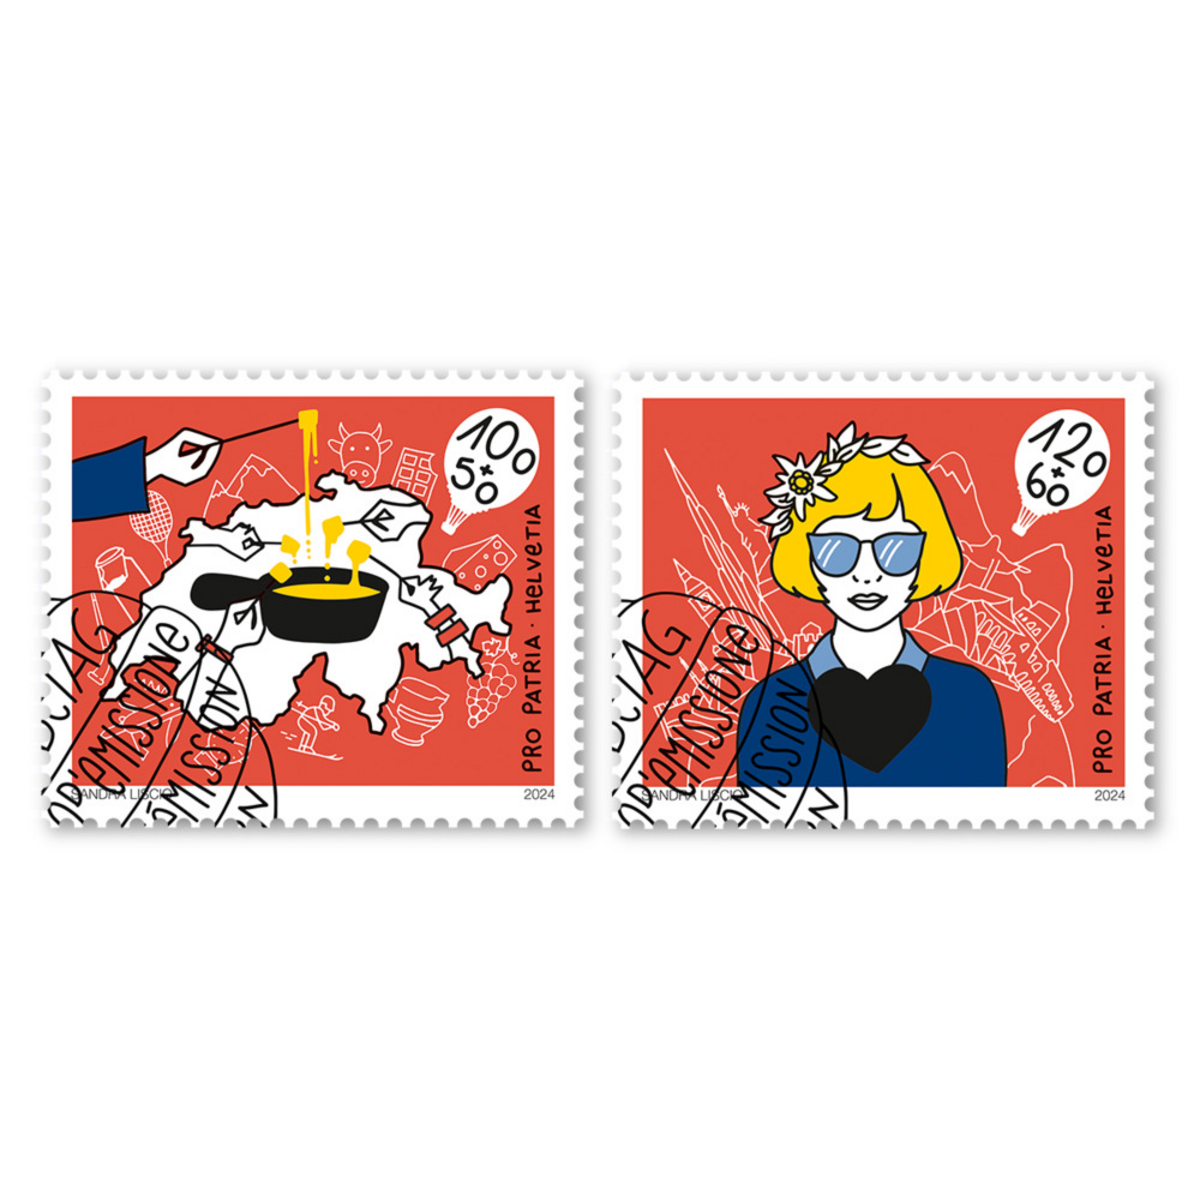 Deux timbres Pro Patria